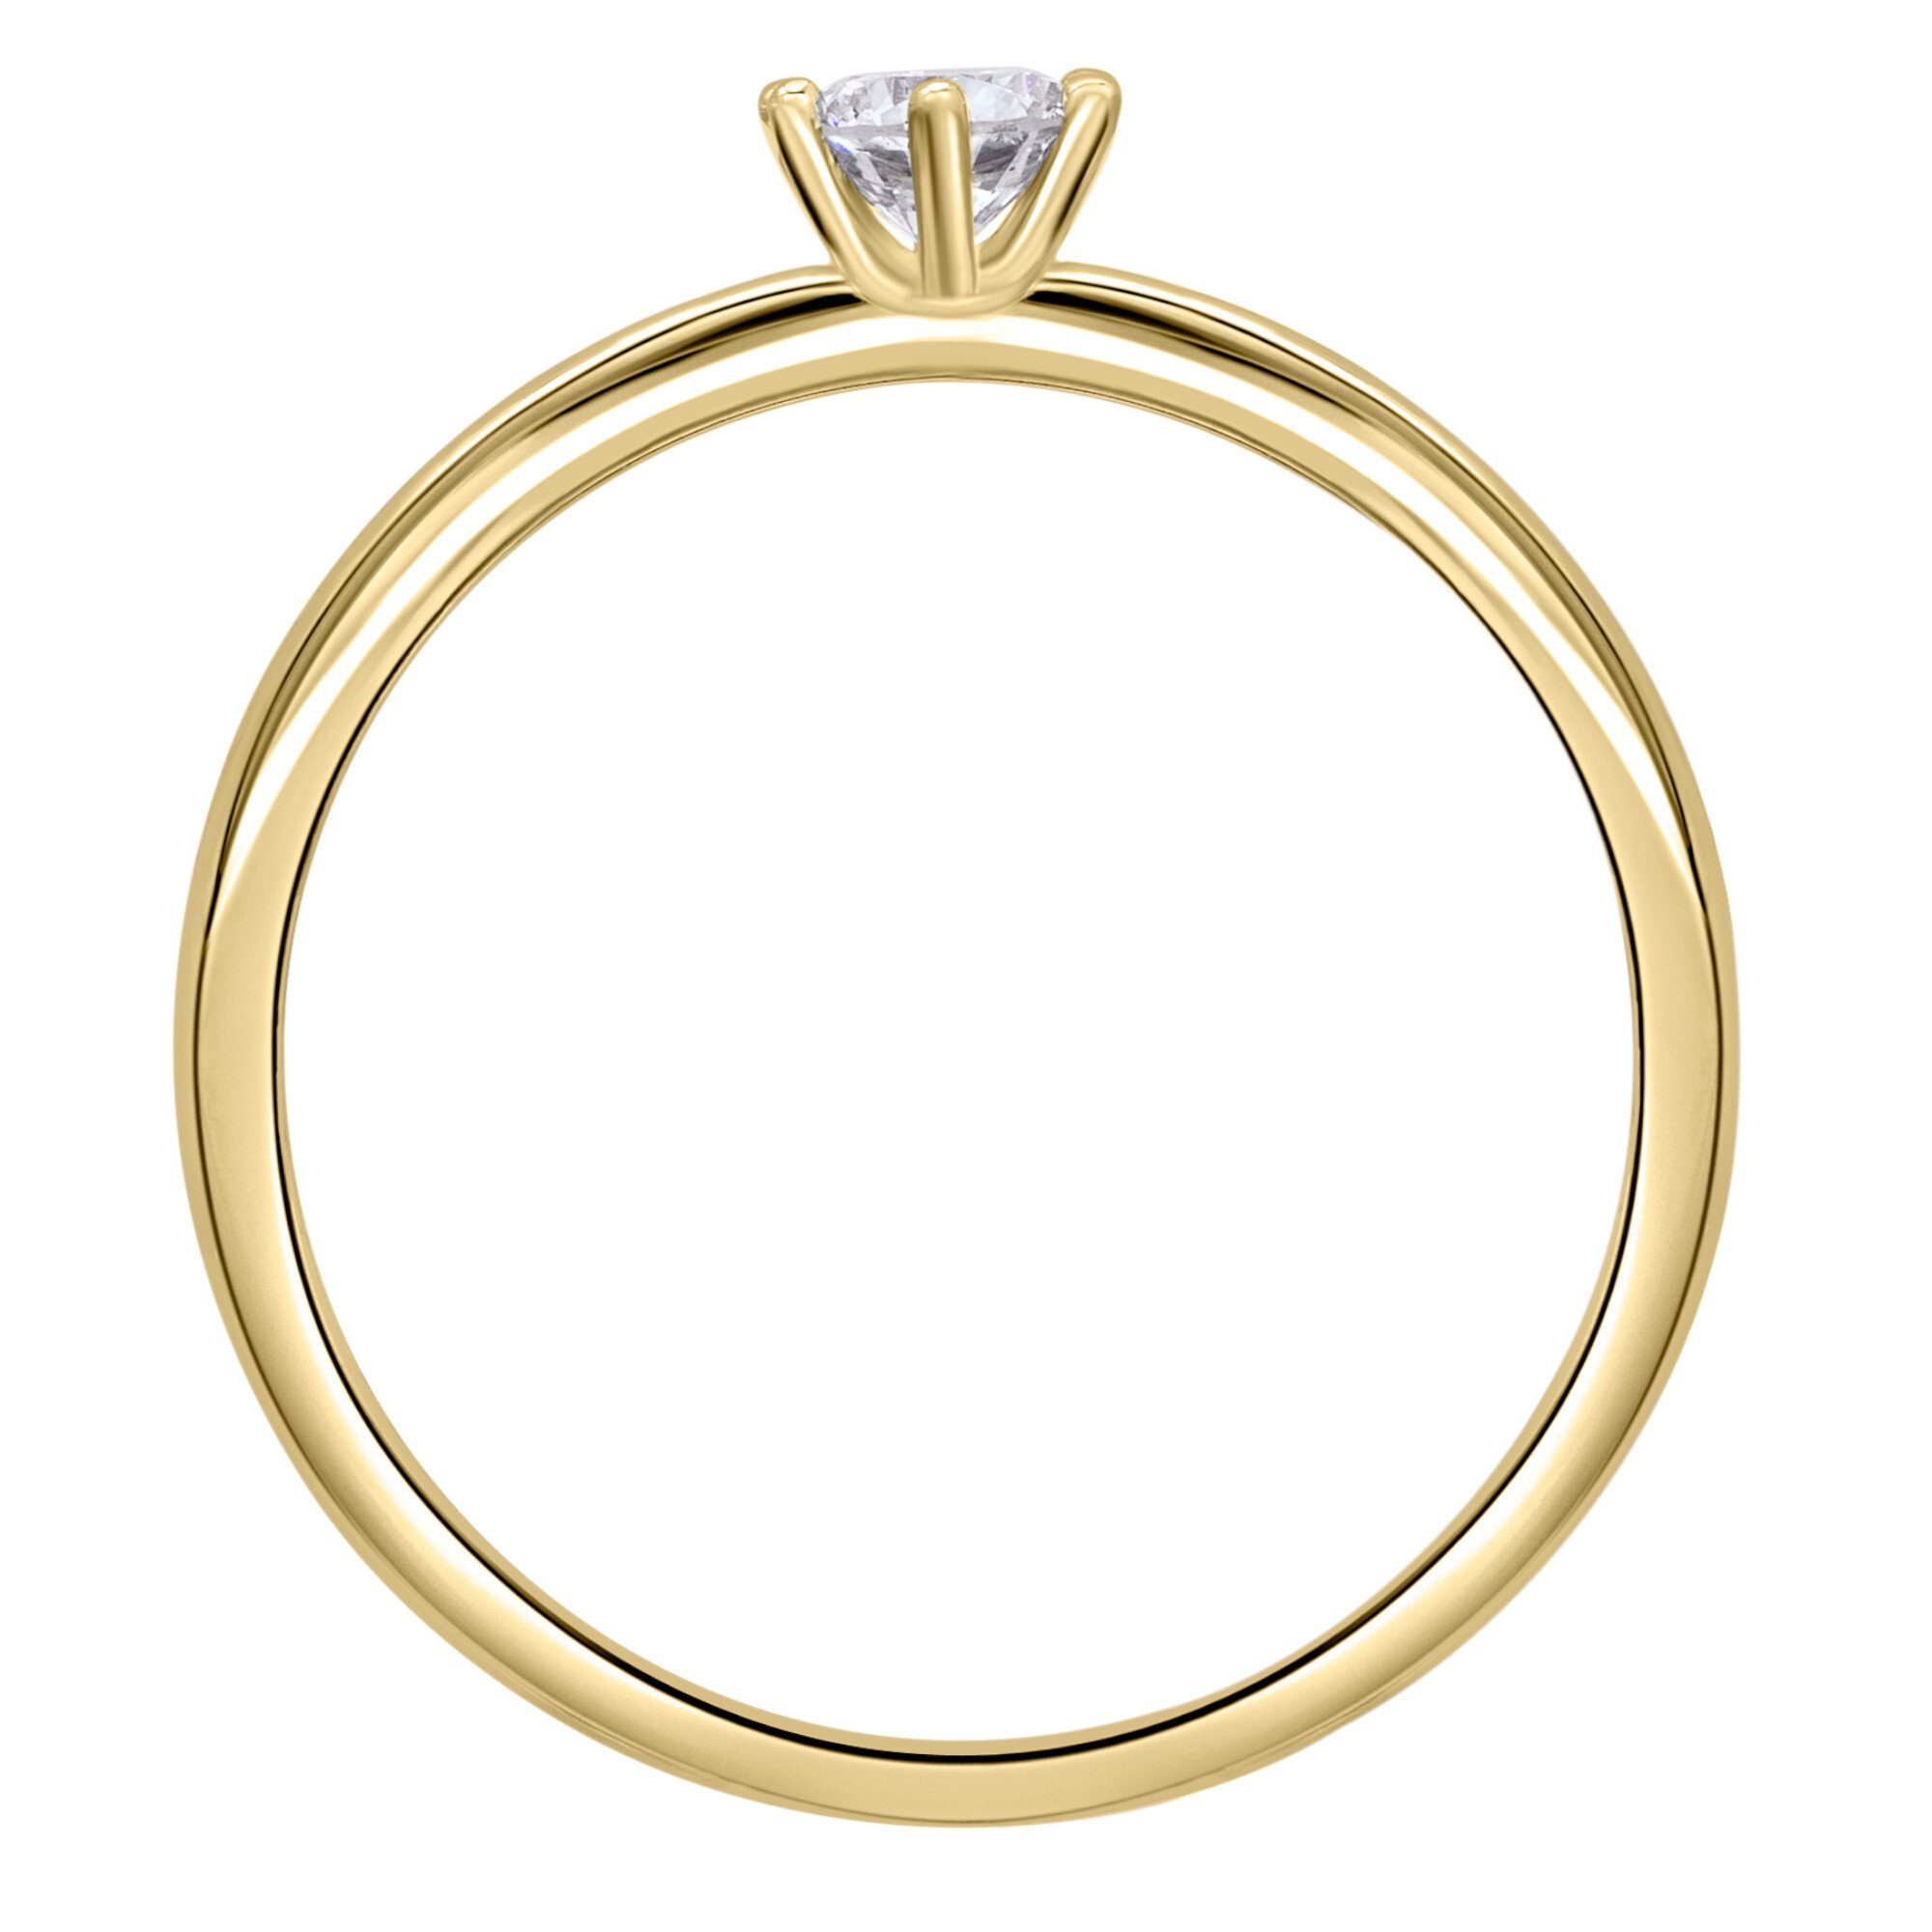 ONE ELEMENT aus Gold Damen Diamant Brillant Ring Diamantring Schmuck 0.2 ct 750 Gelbgold